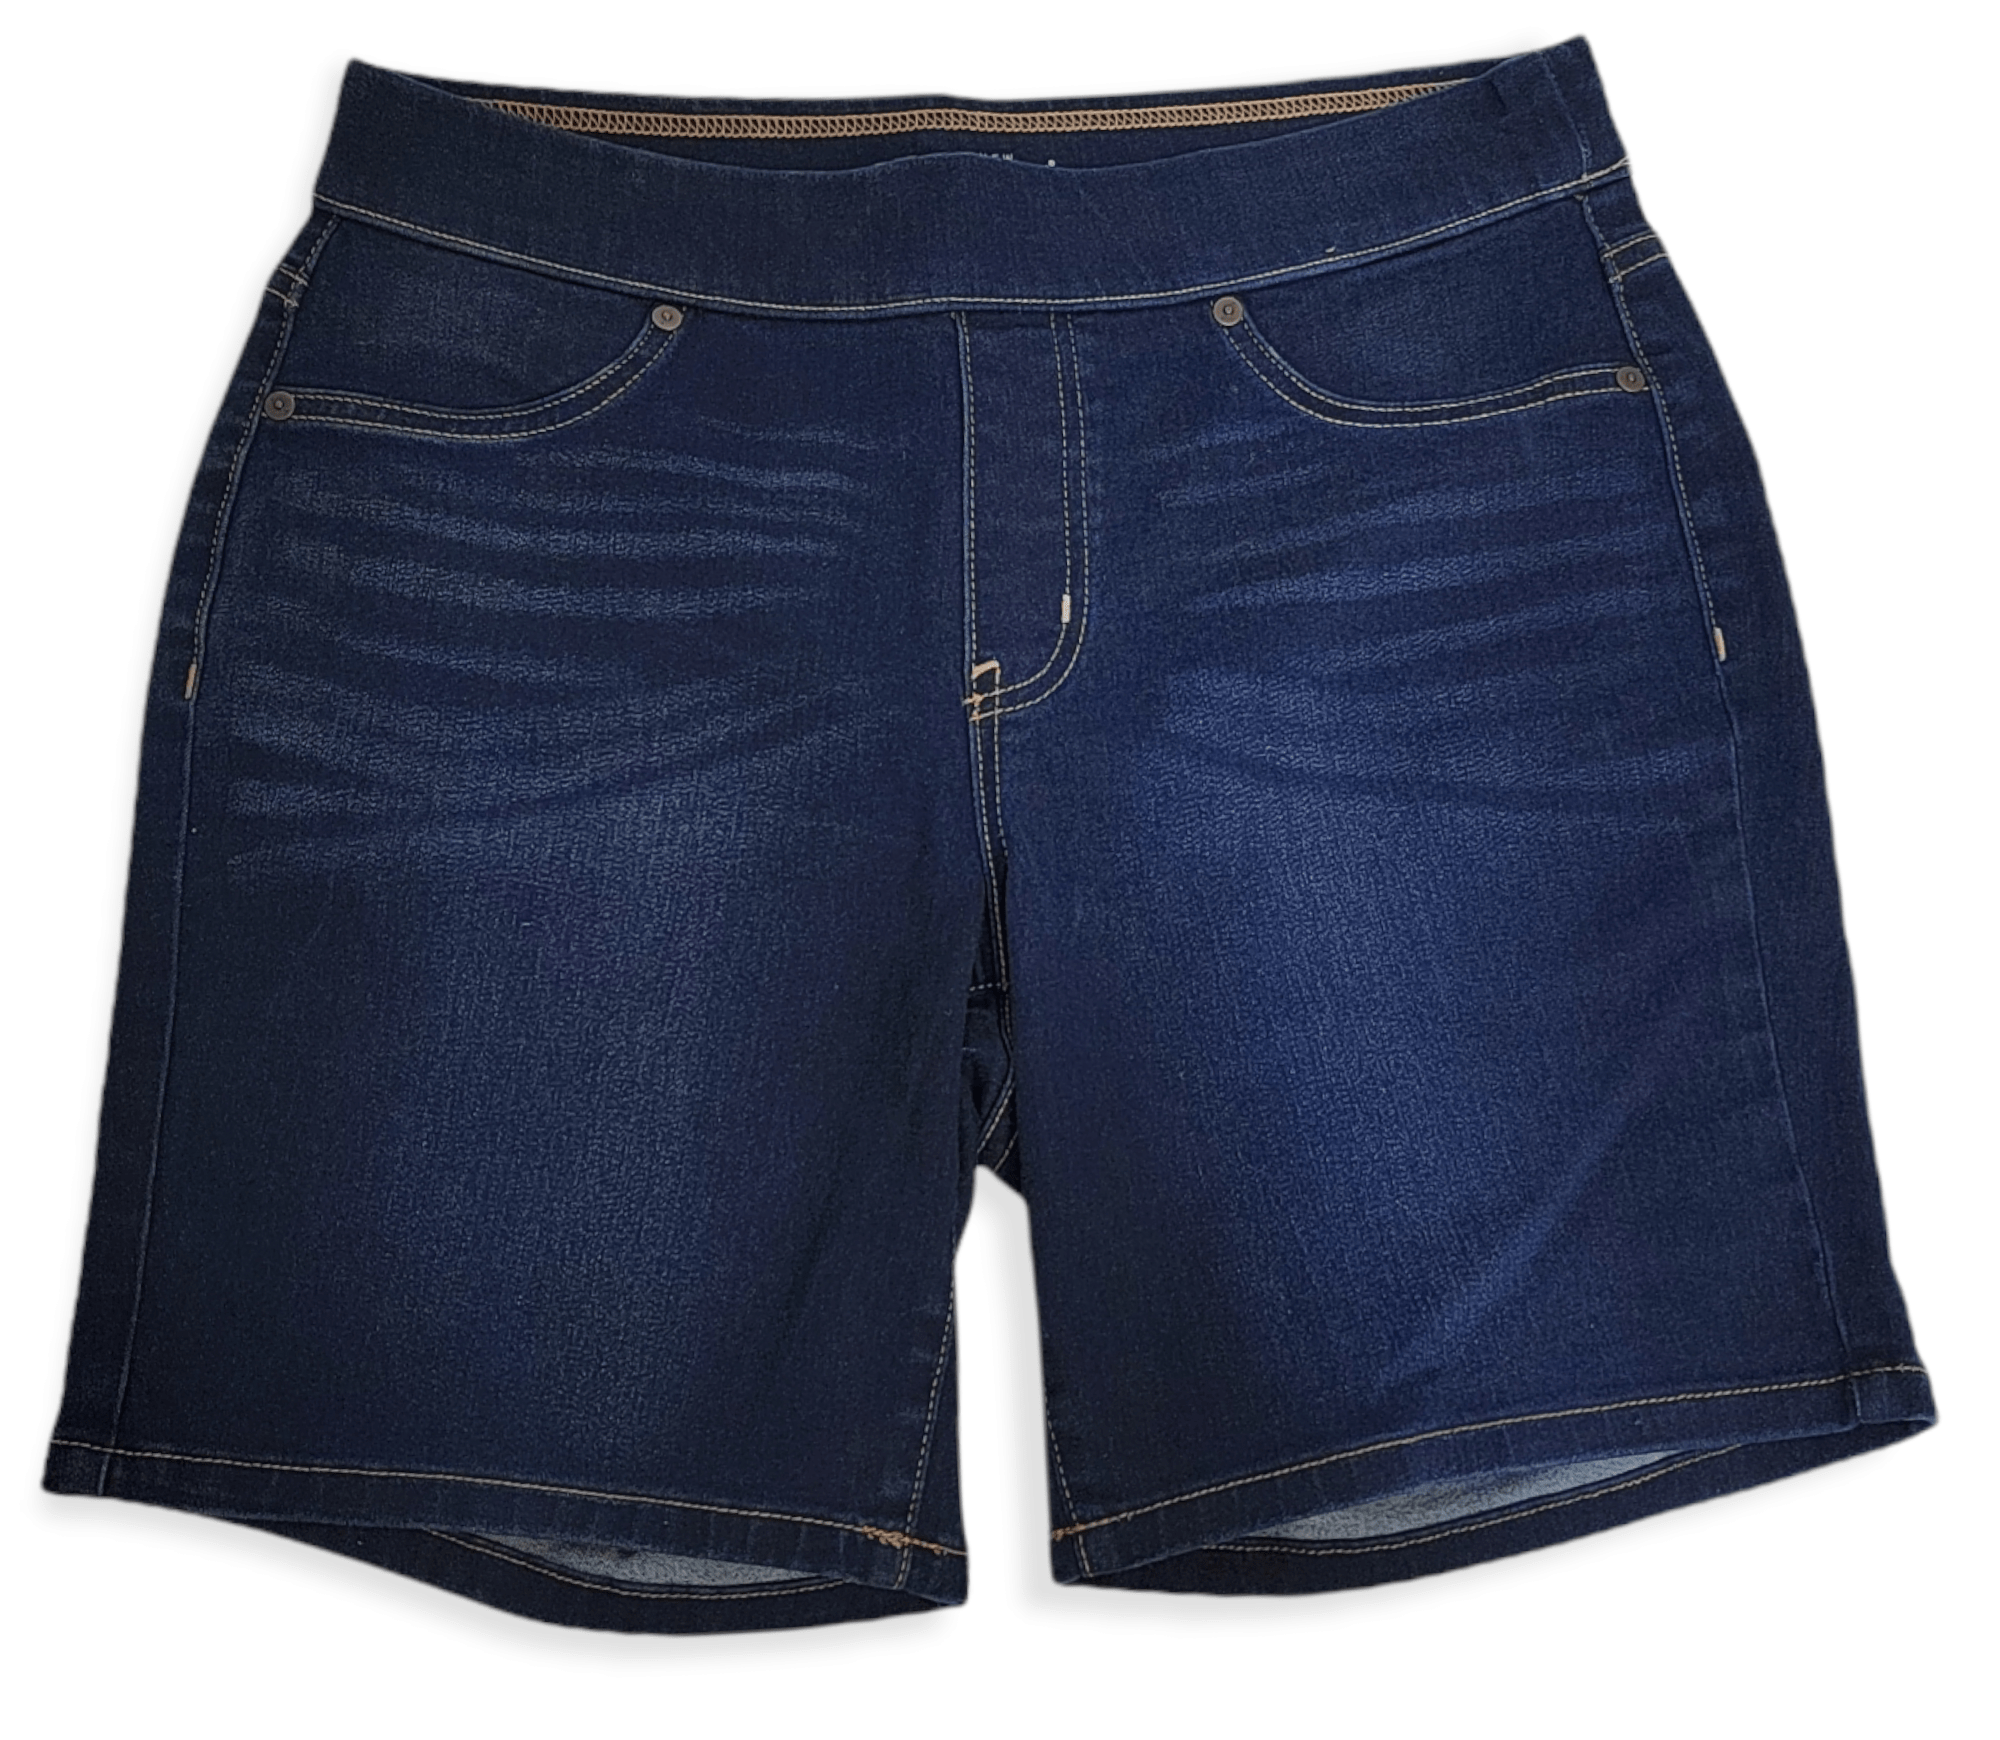 ElOutlet - Summer Women Women Shorts Women Shorts - Dark Blue Jeans